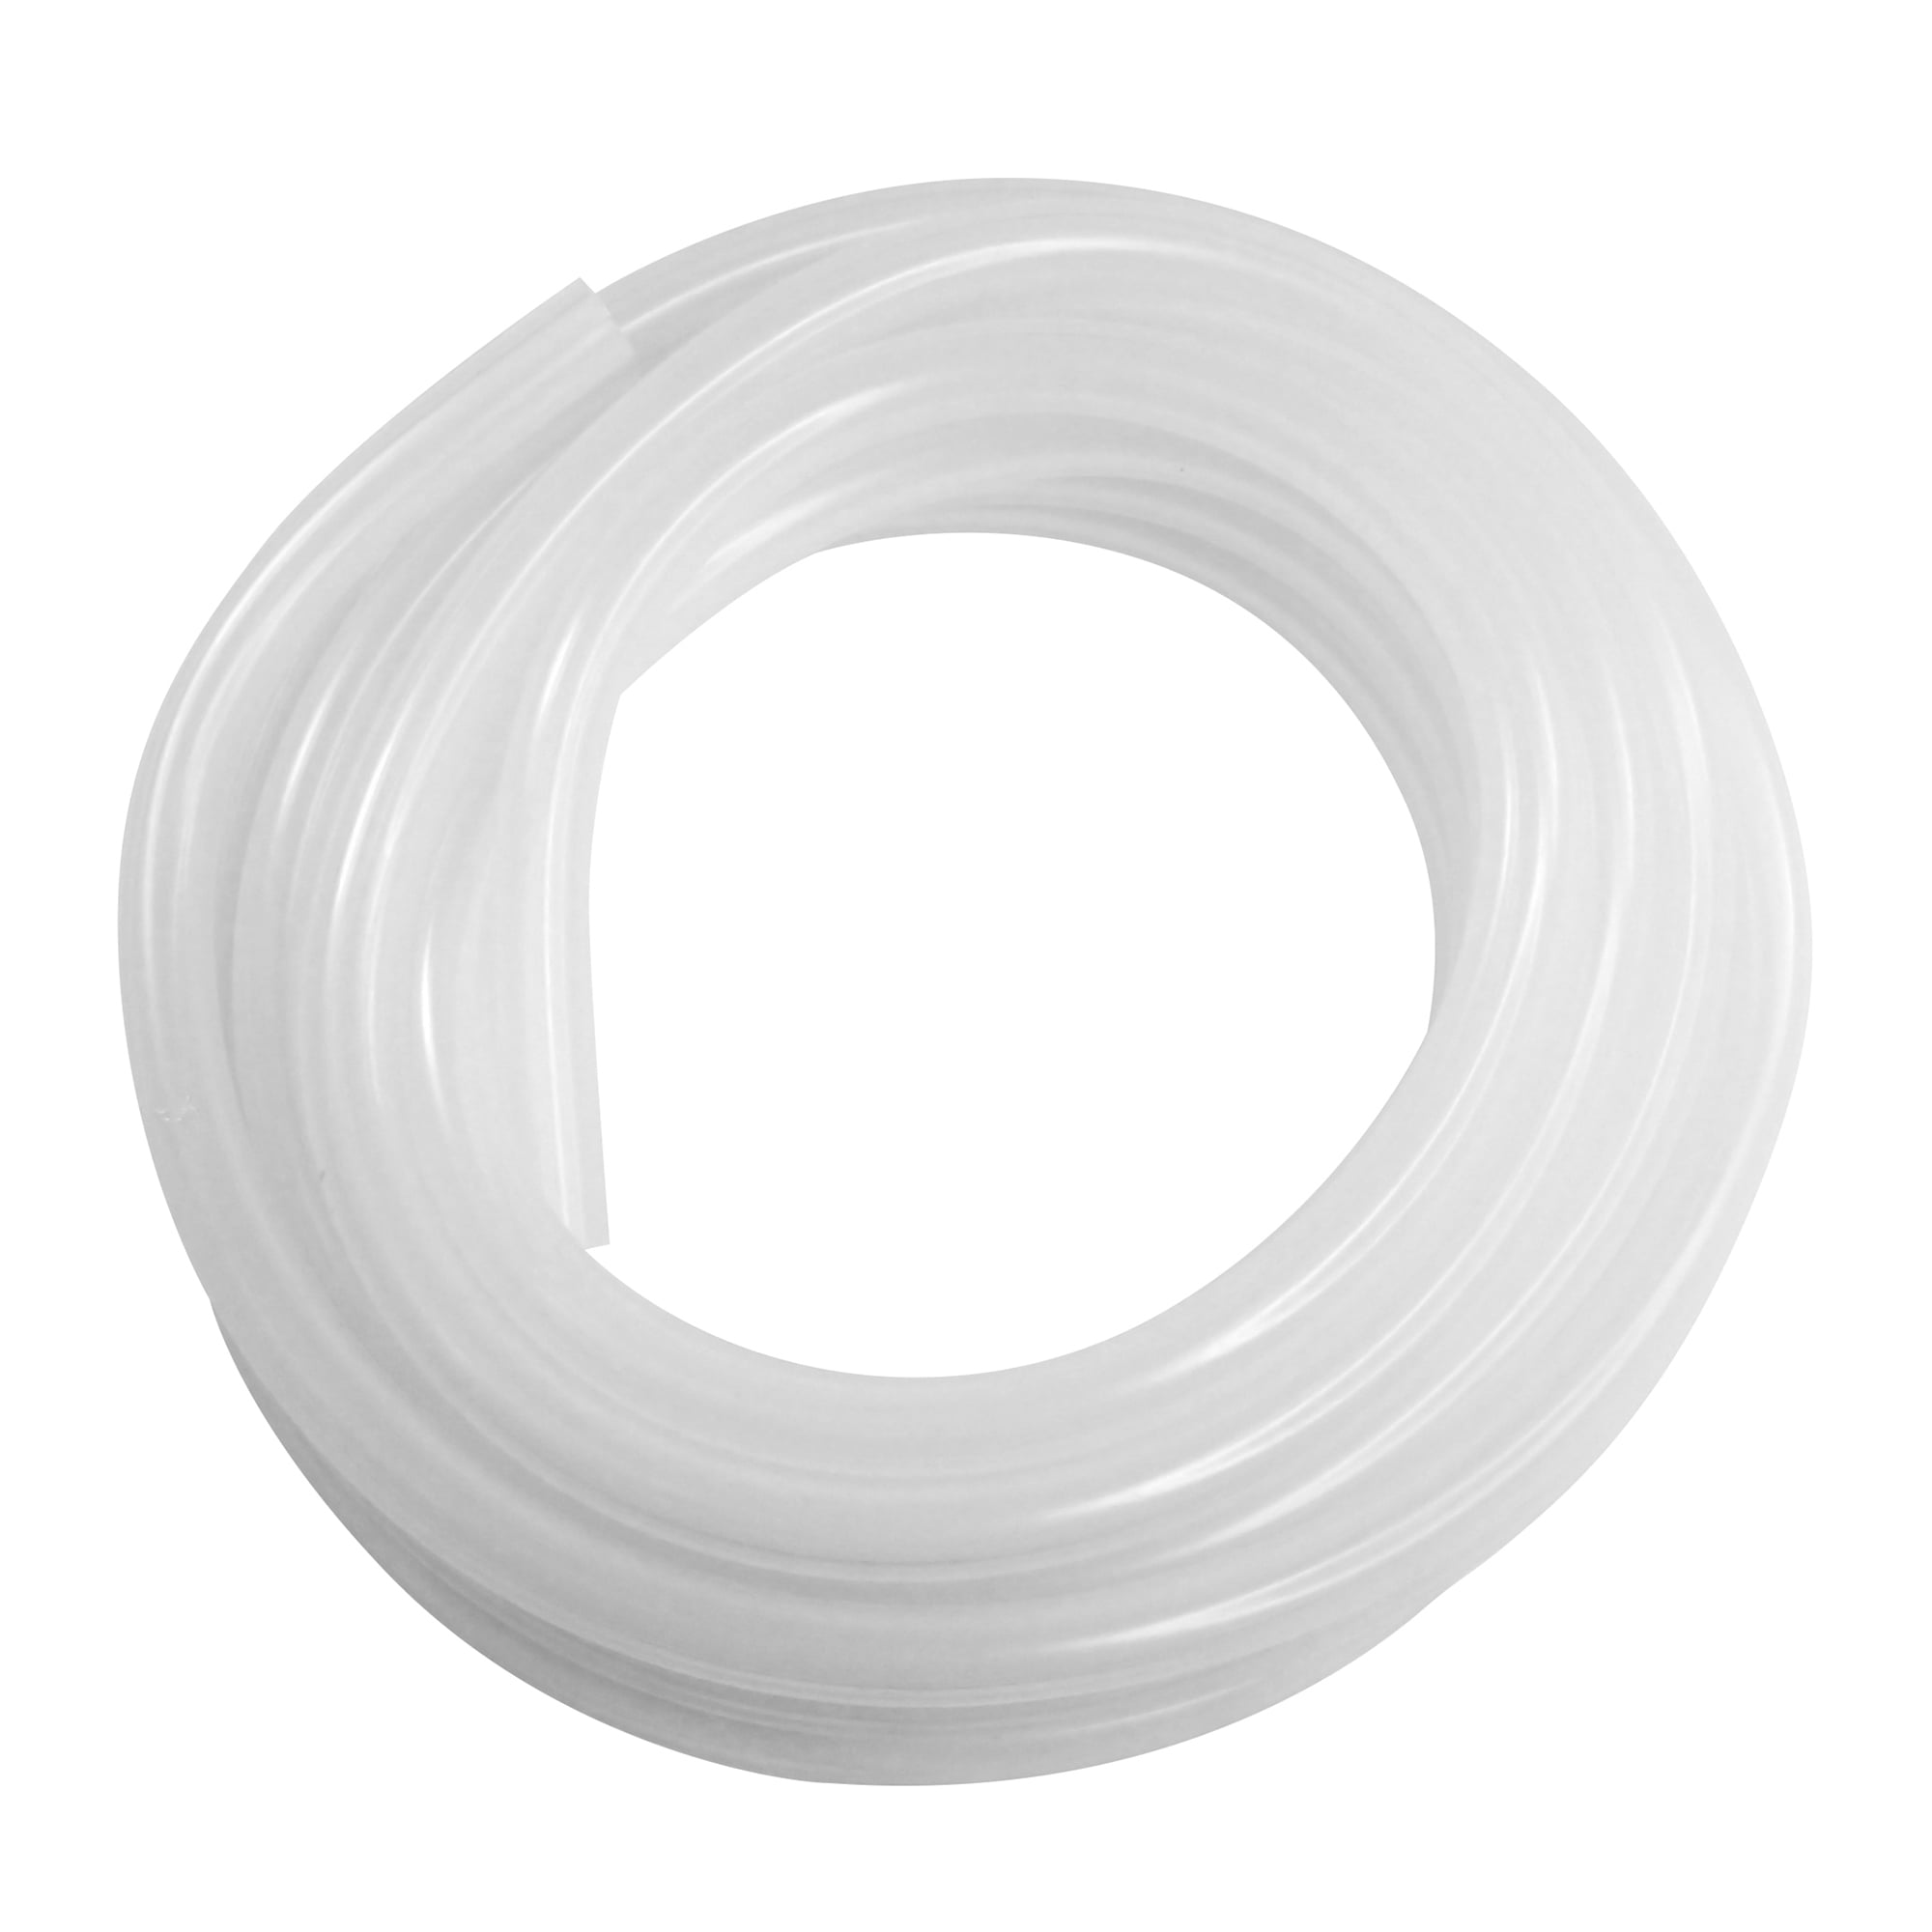 5/32” I.D. 10 FEET LONG WHITE VINYL TUBING 1/4” O.D. 